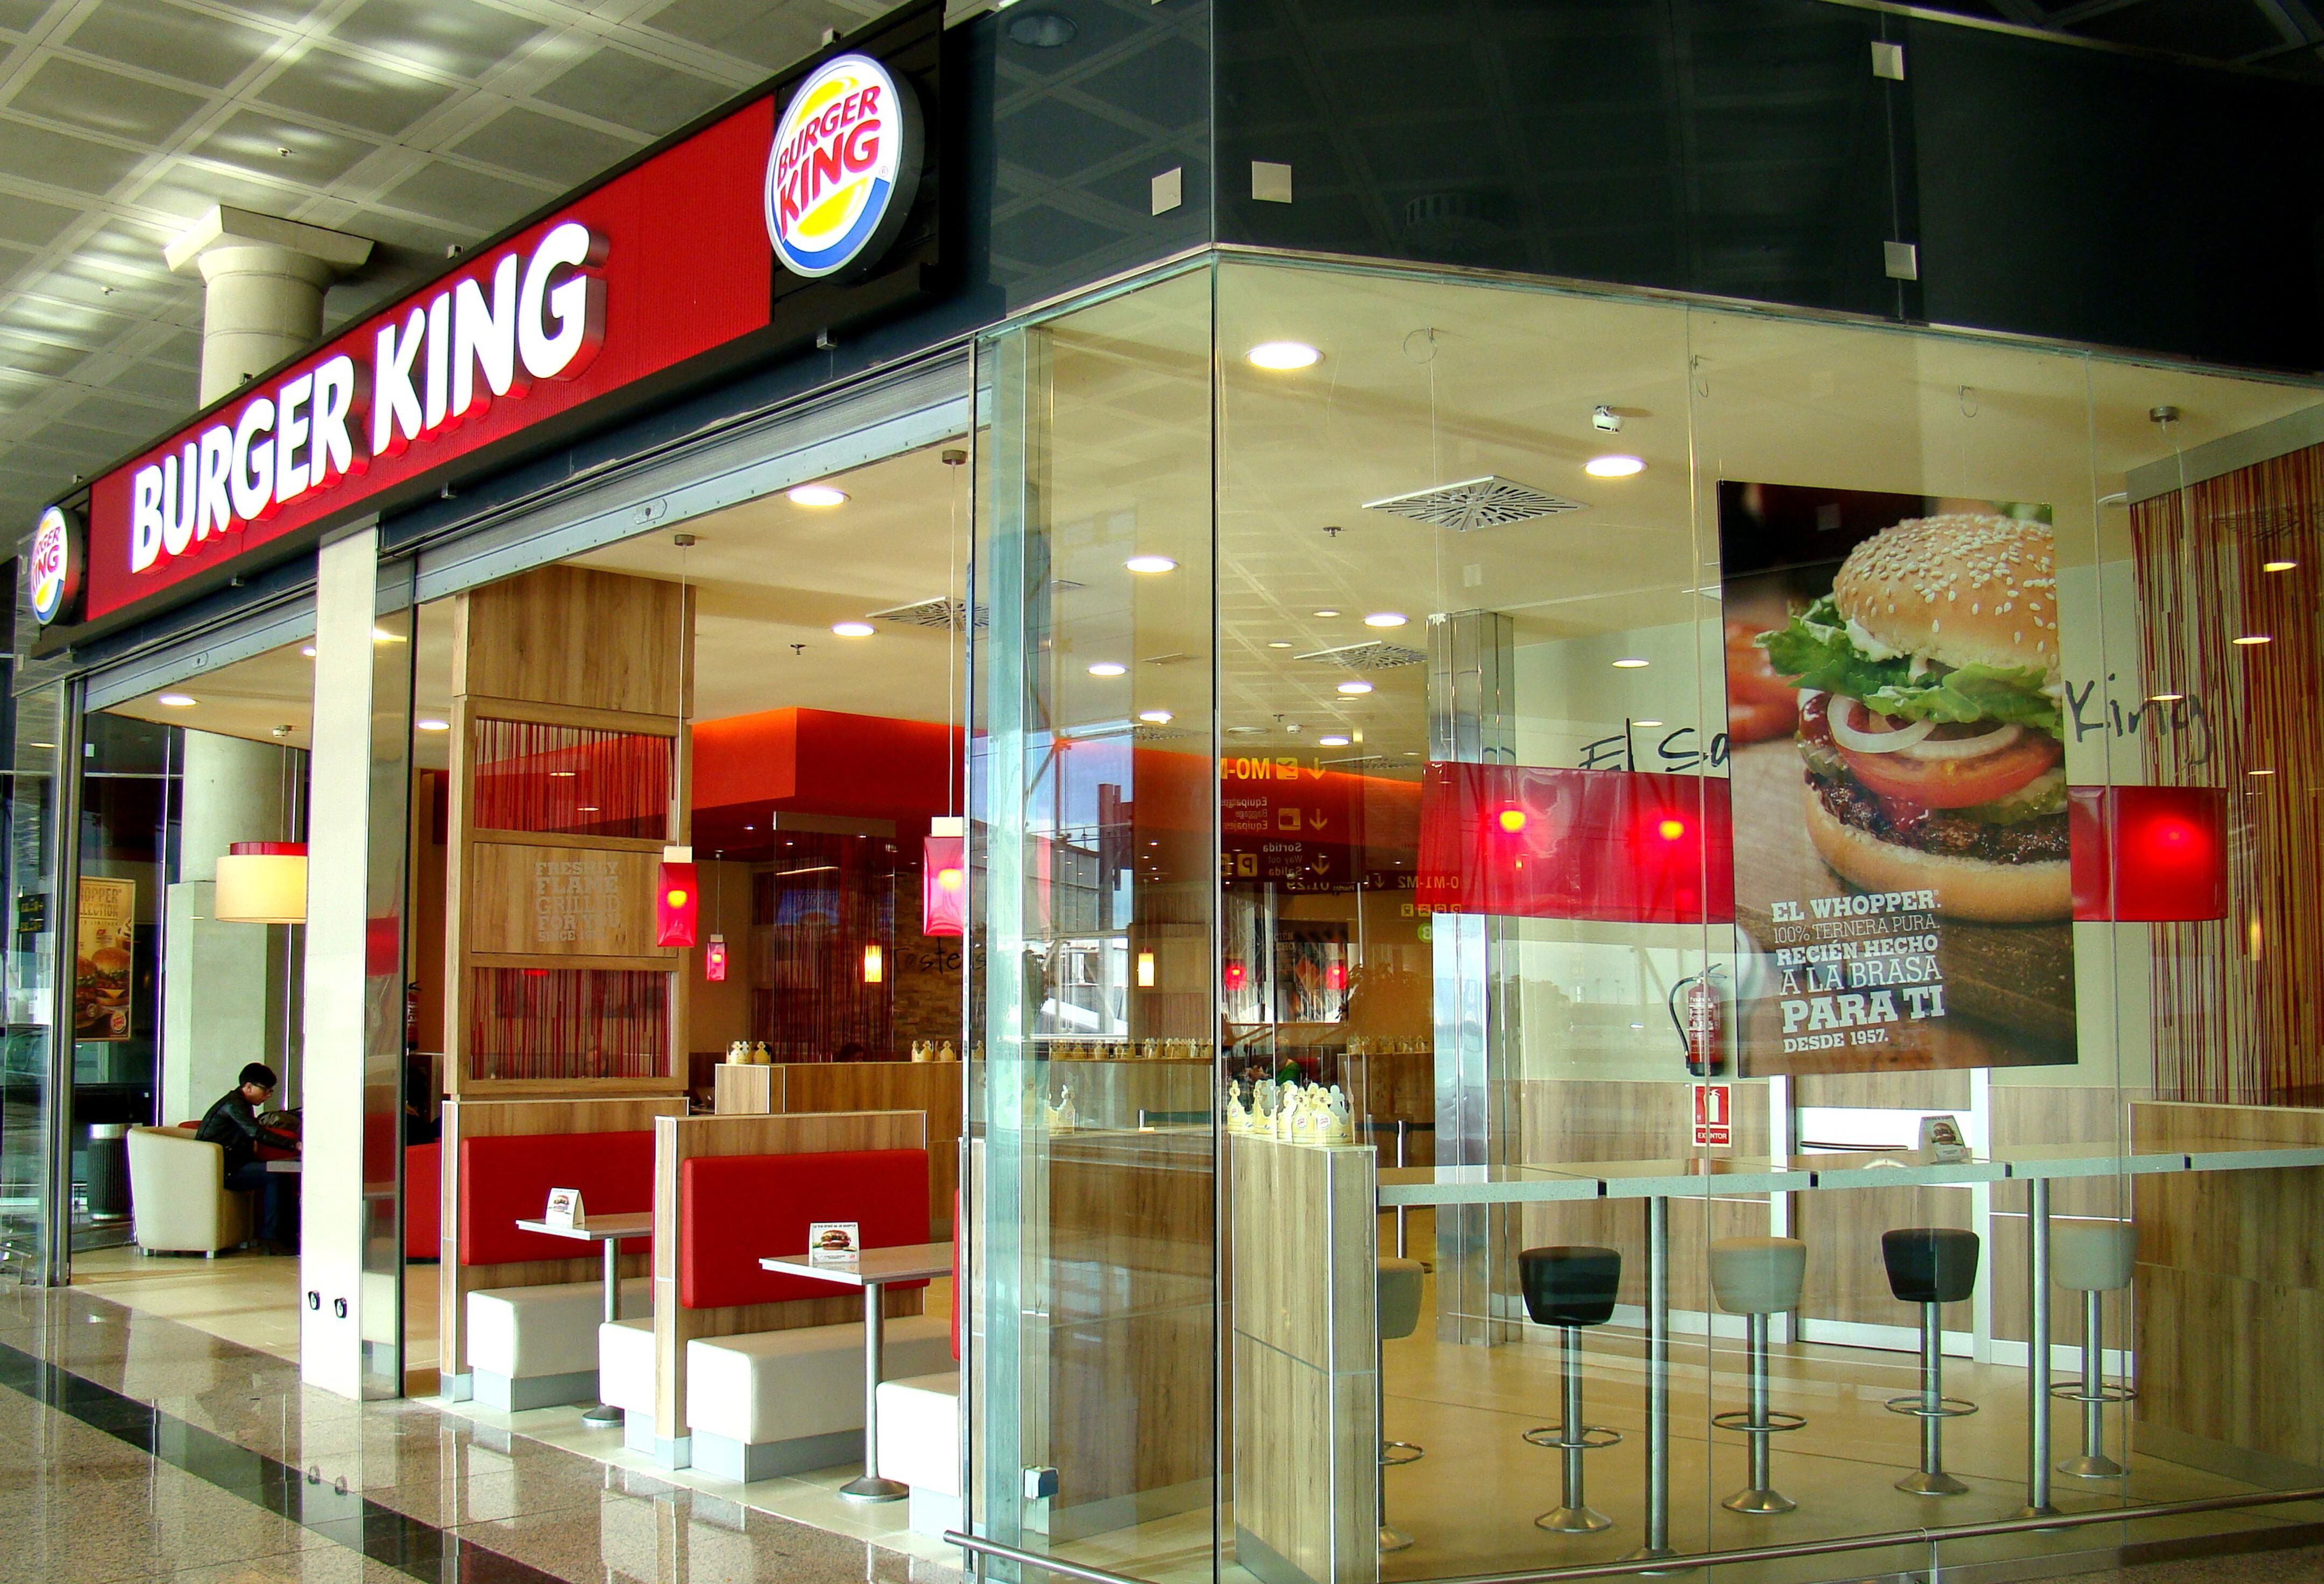 18/08/2012 Burger King 					CATALUÑA ESPAÑA EUROPA BARCELONA ECONOMIABURGER KING